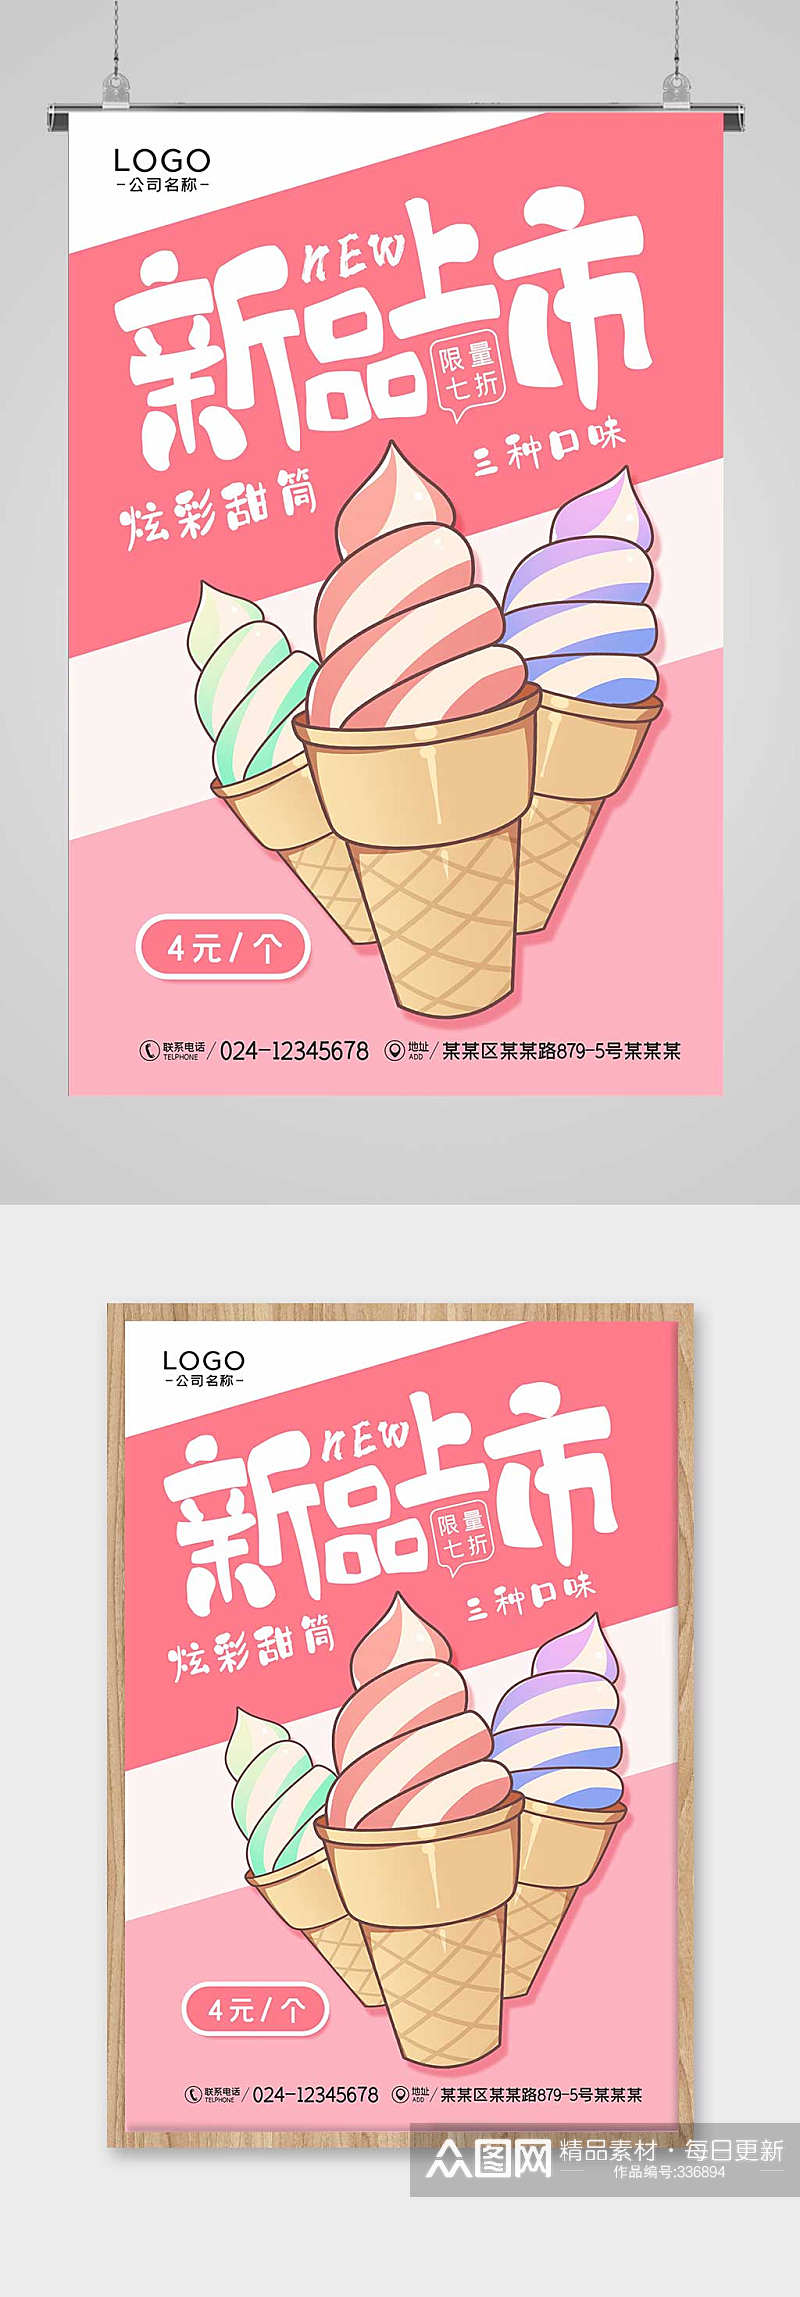 冰淇淋新品上市宣传海报素材